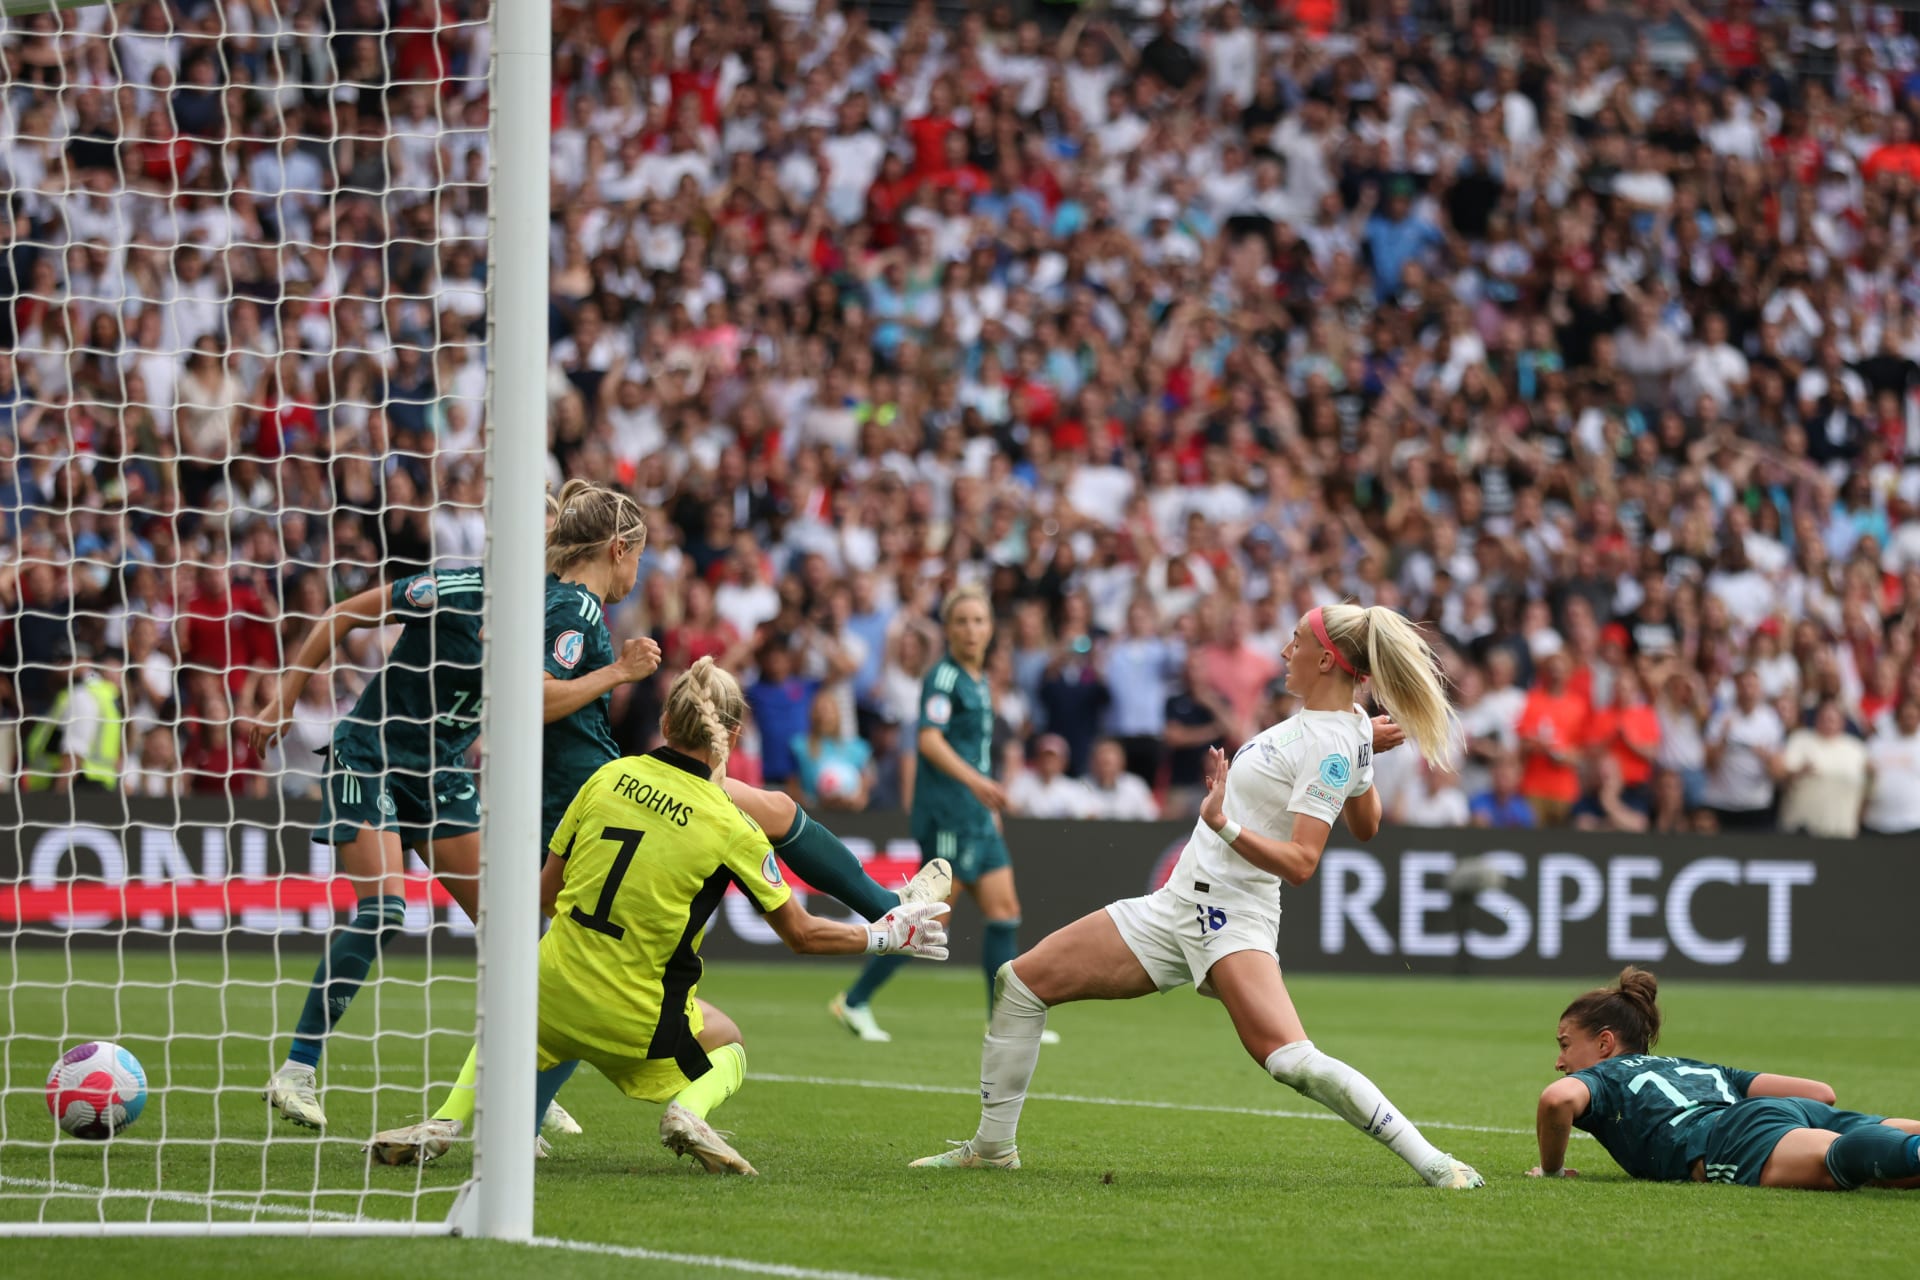 Takto dopravila míč do branky Německa a tím zařídila Anglii triumf na mistrovství Evropy.